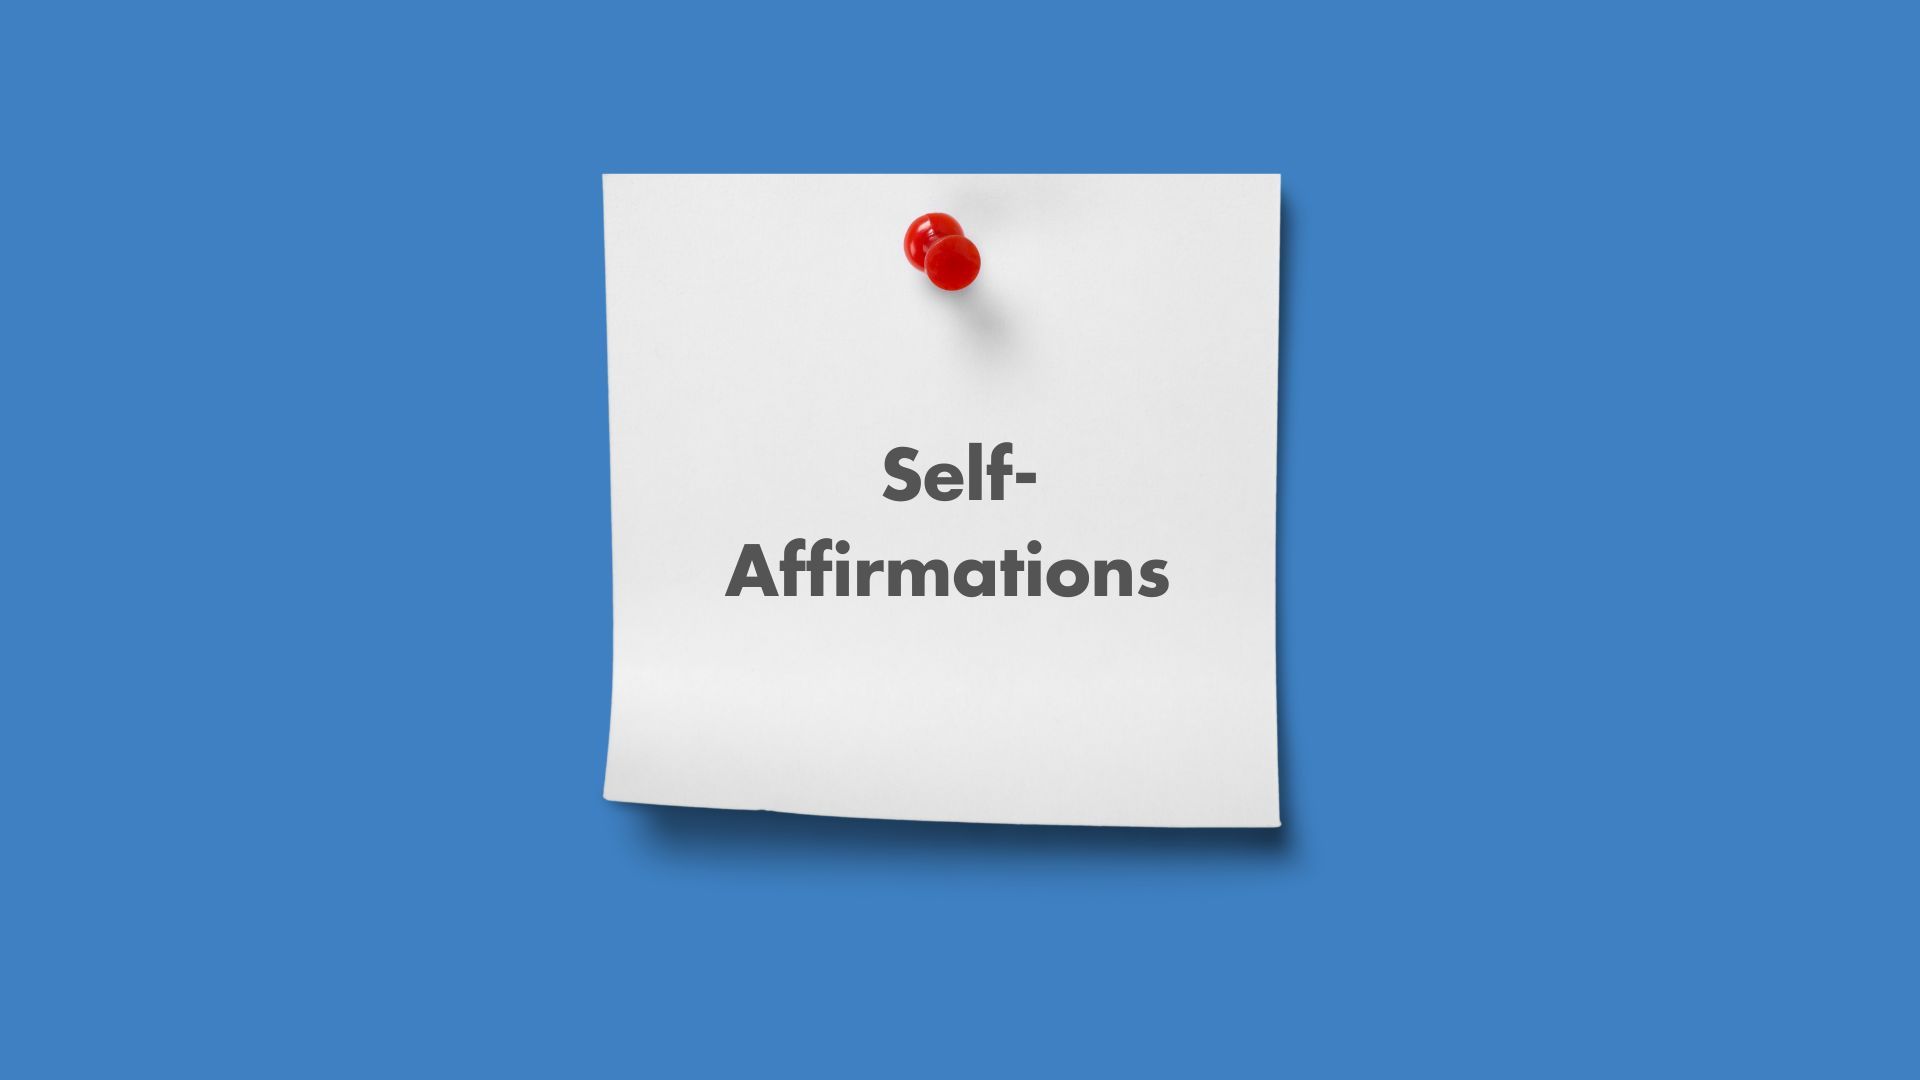 Self-affirmations